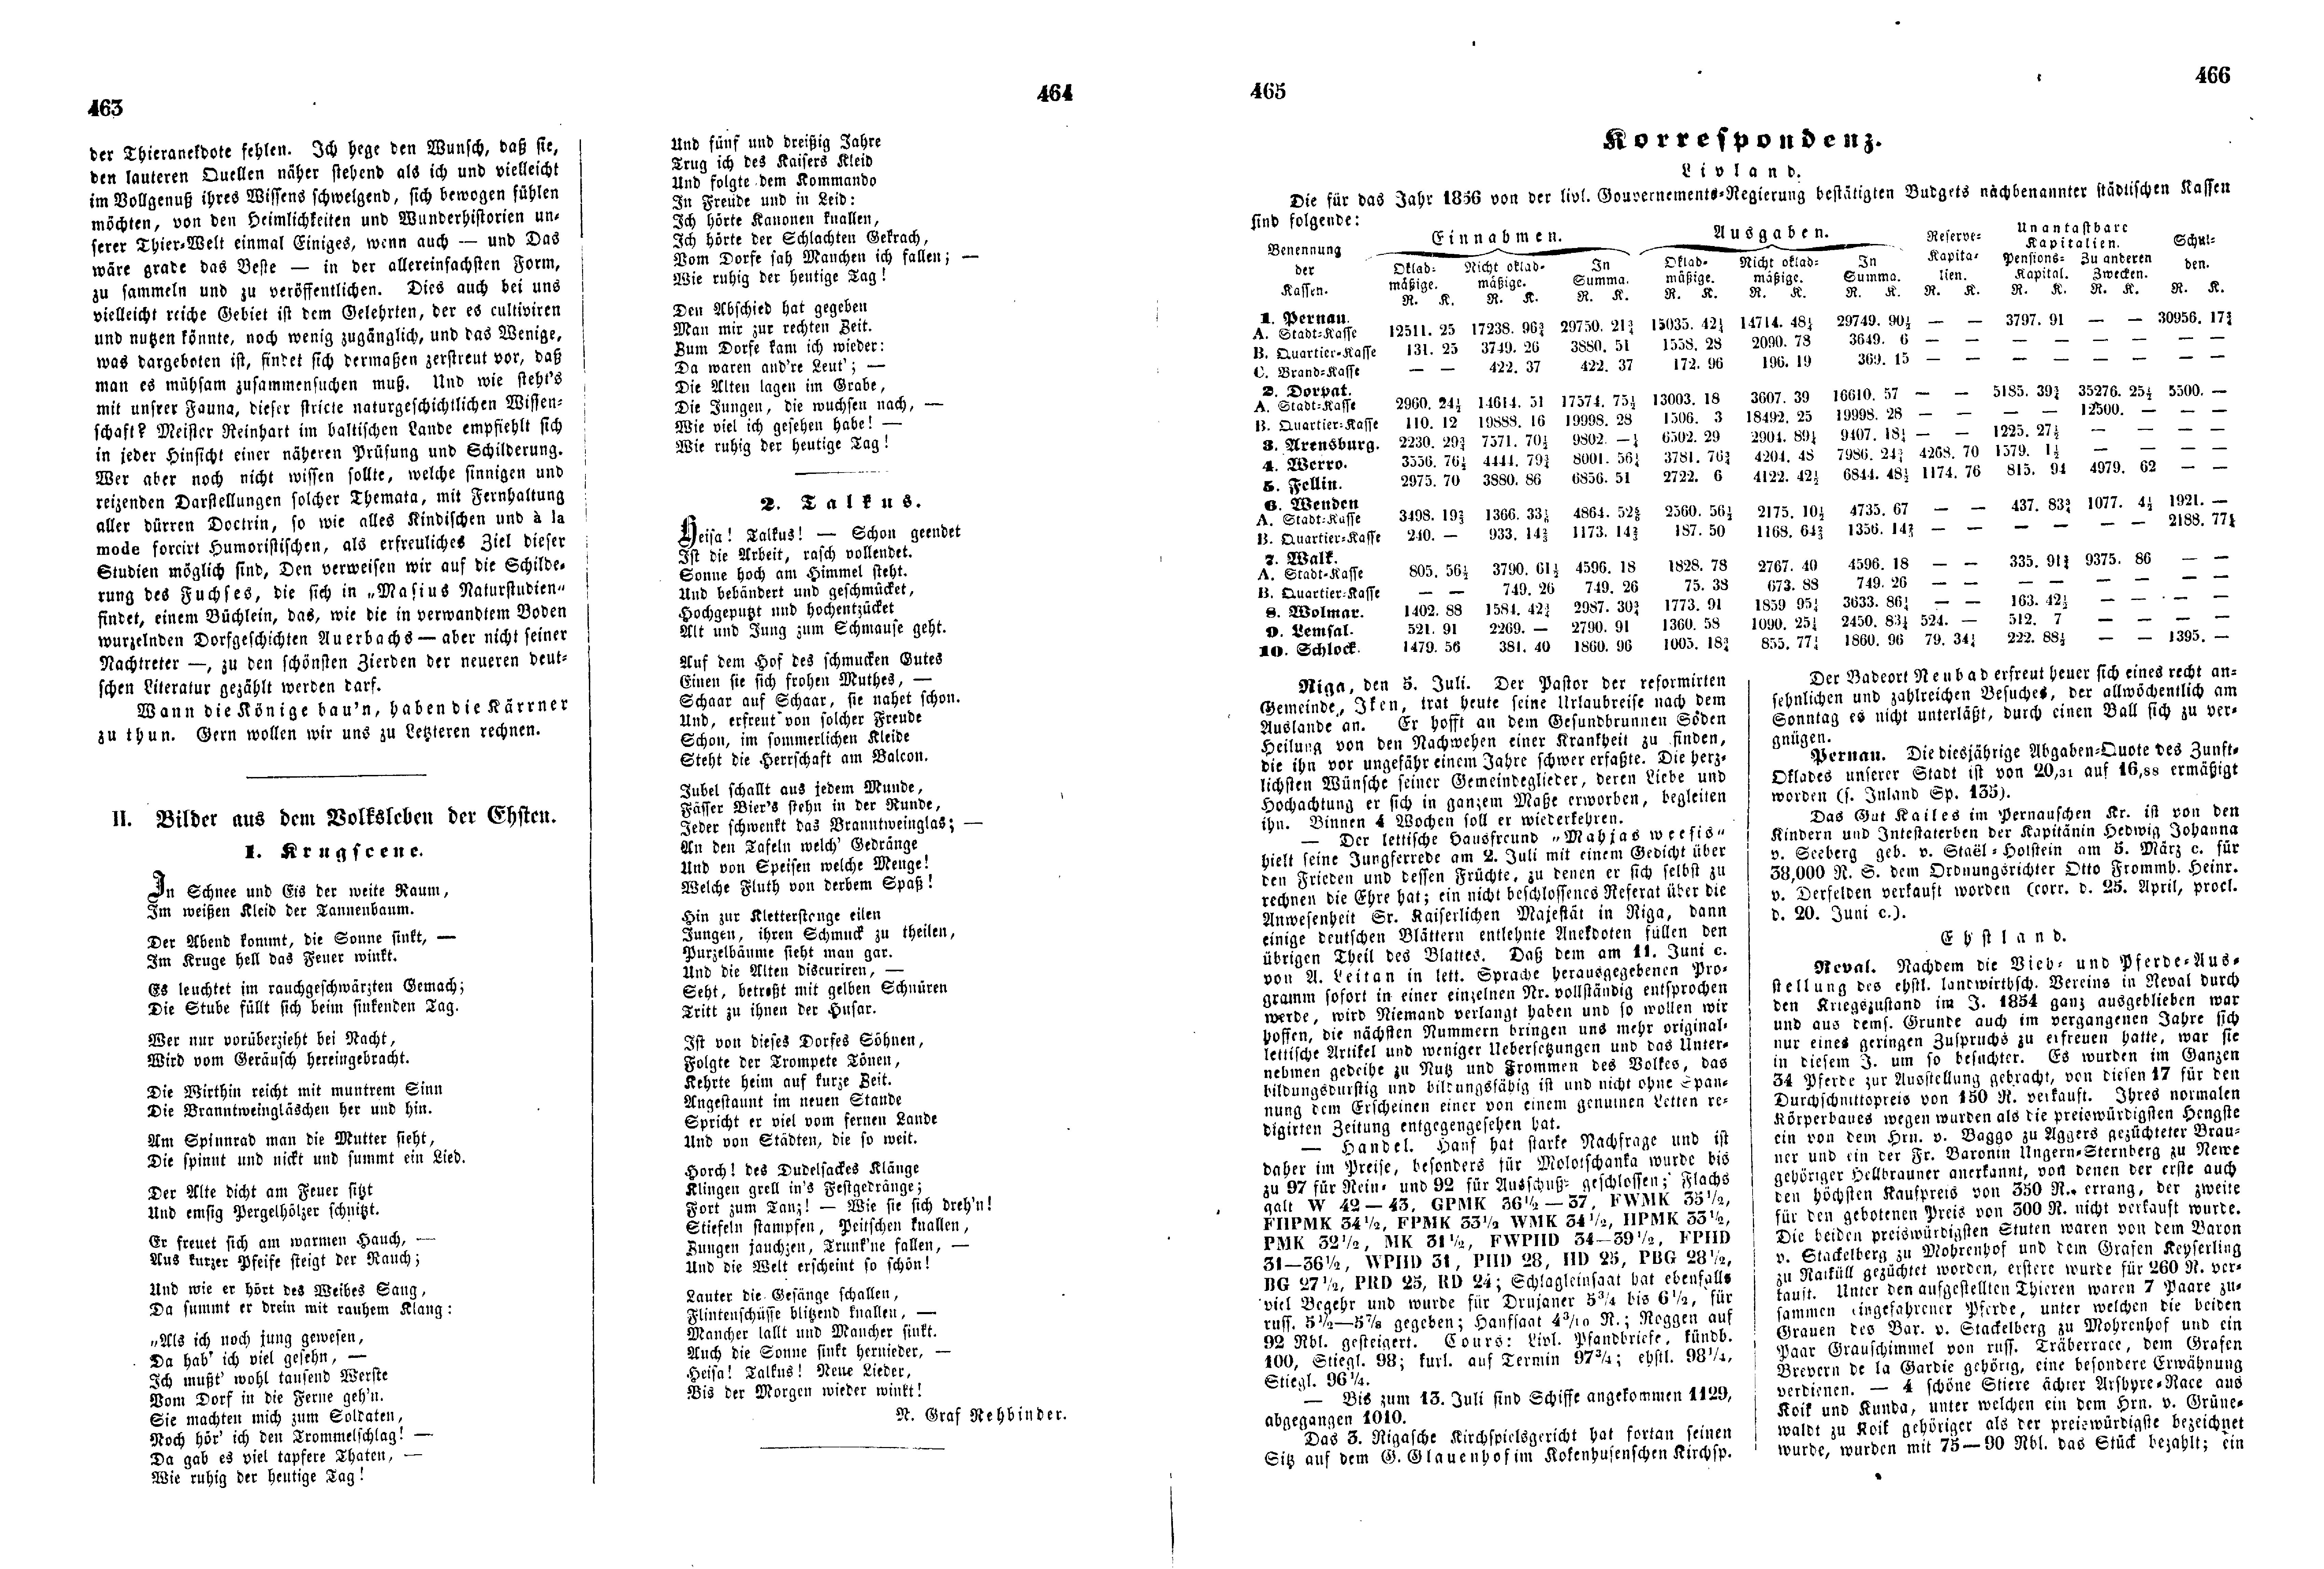 Talkus (1856) | 1. (463-466) Haupttext